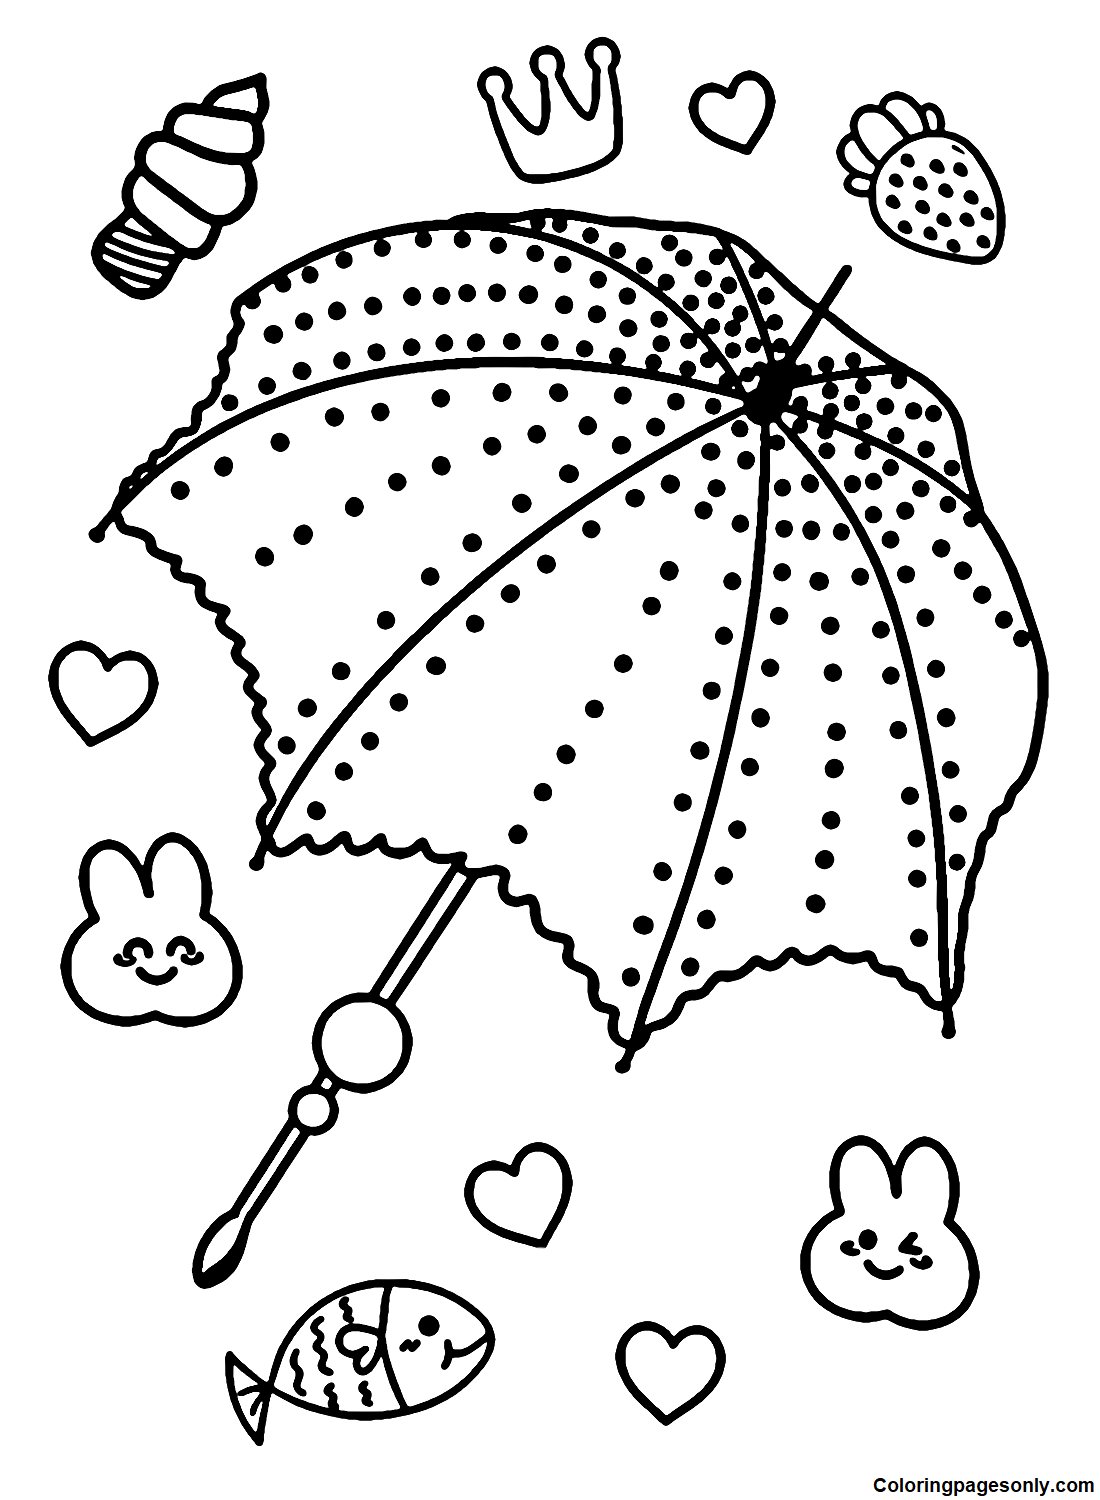 Распечатанный зонтик от Umbrella